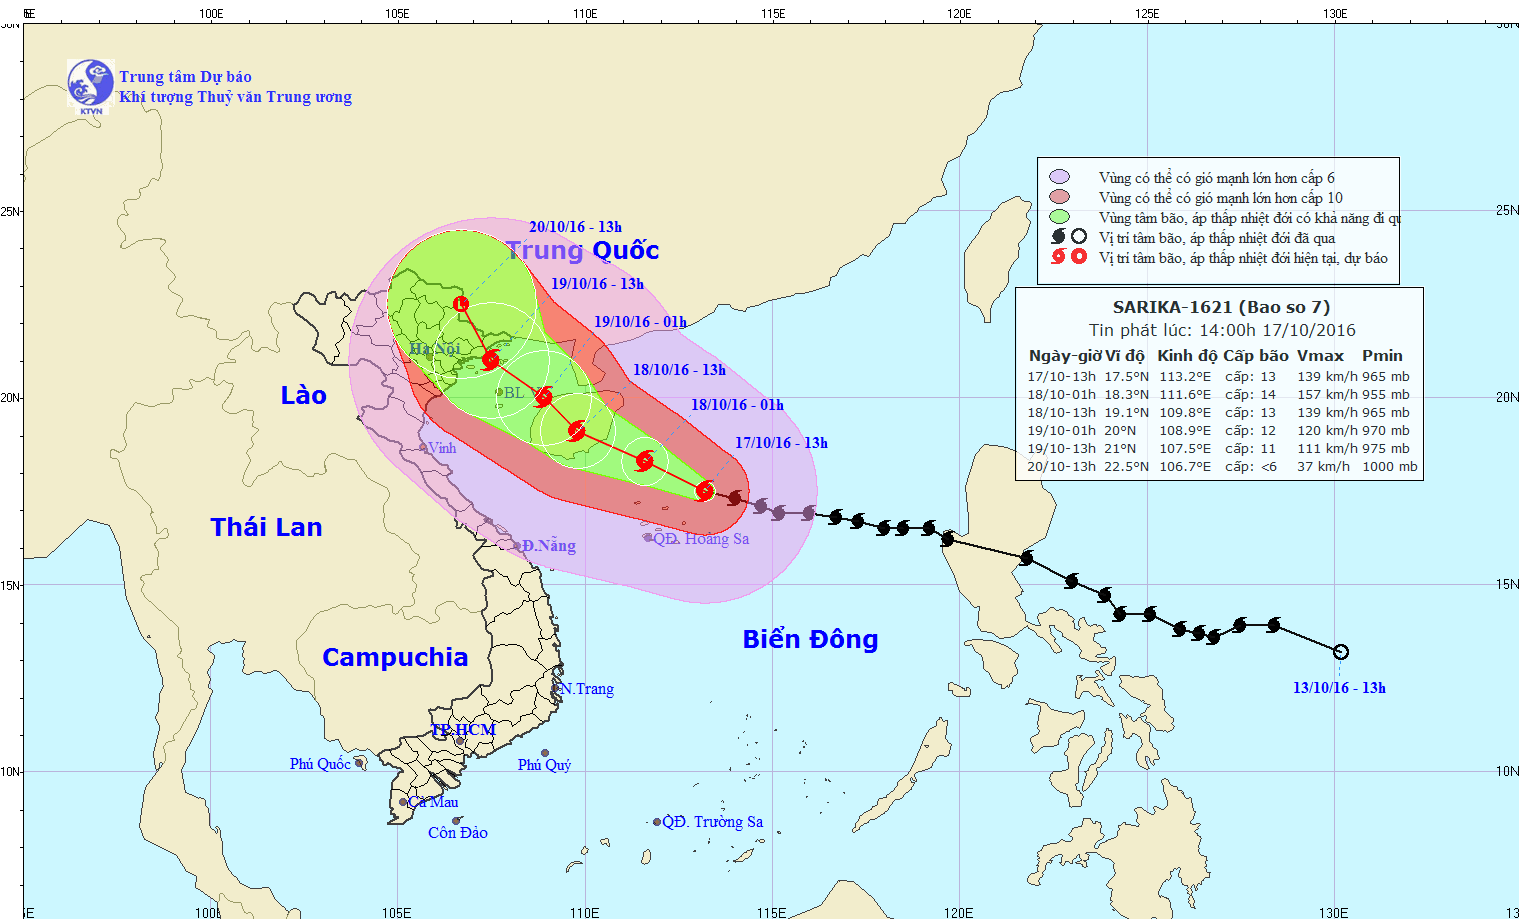 Sarika typhoon 